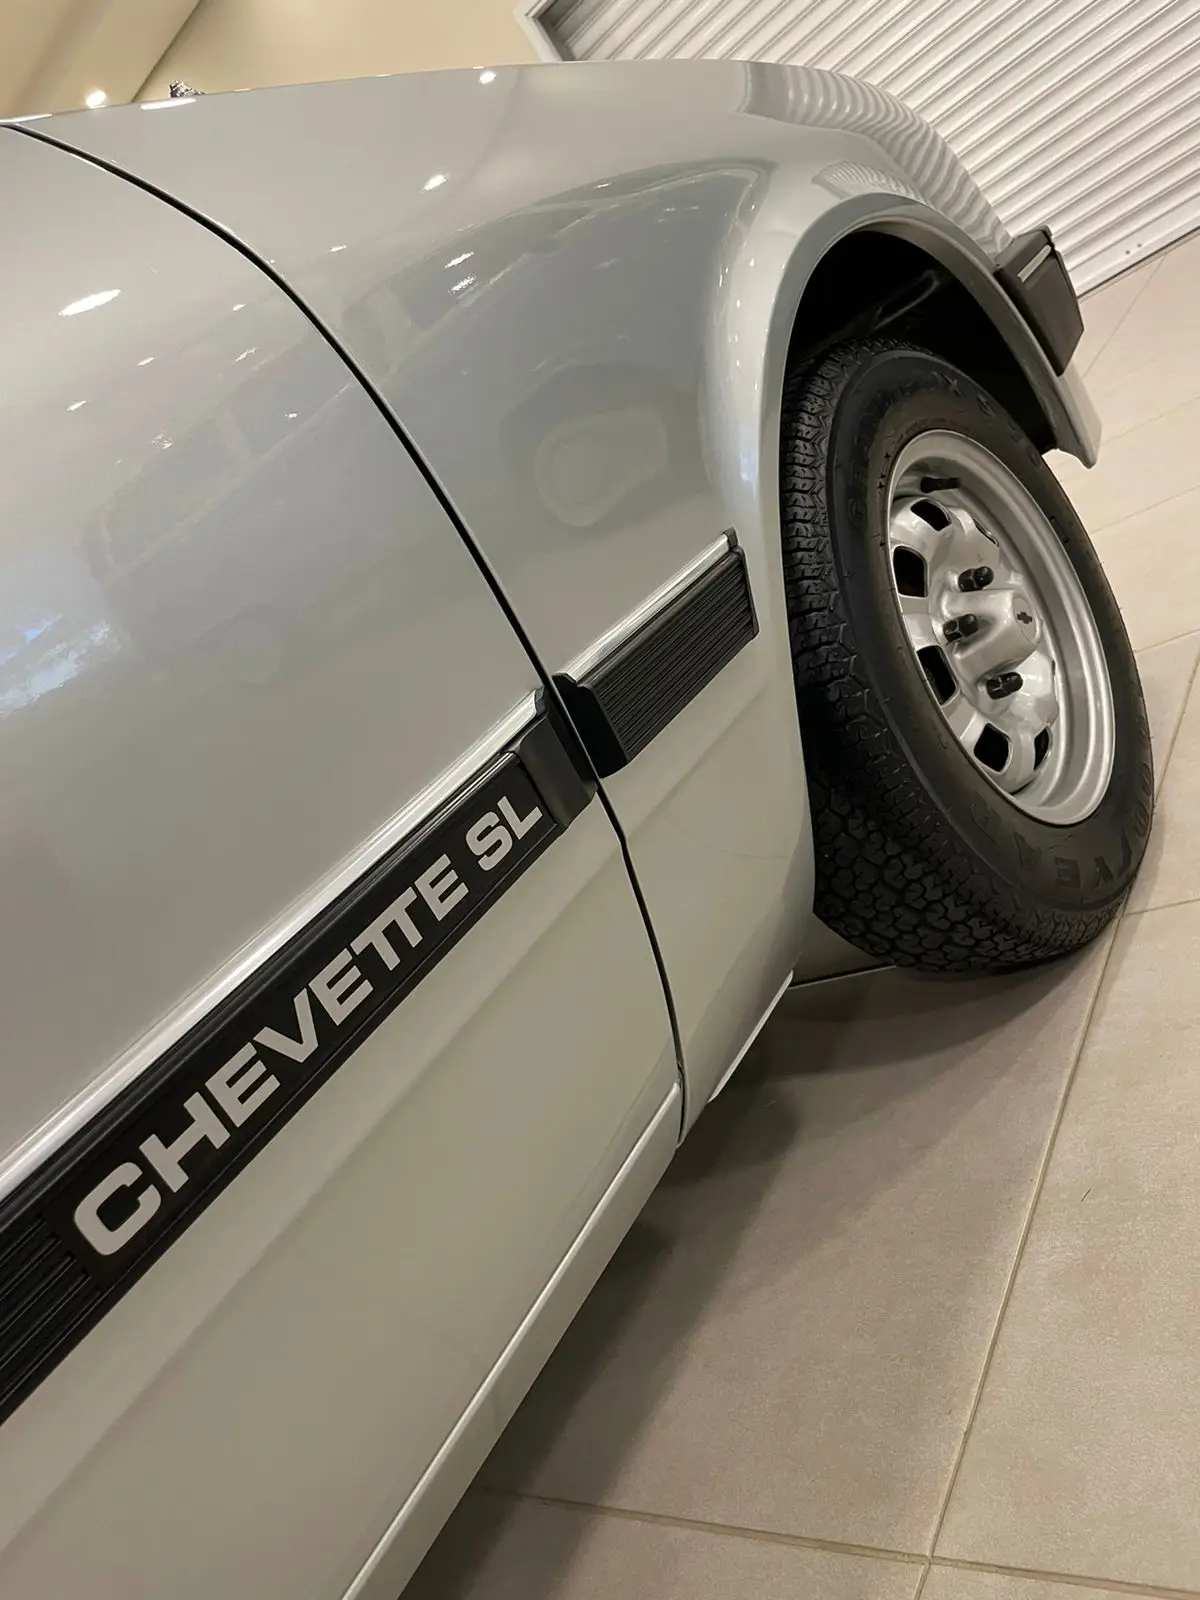 Chevrolet Chevette SL 1989 / Foto: Reginaldo de Campinas